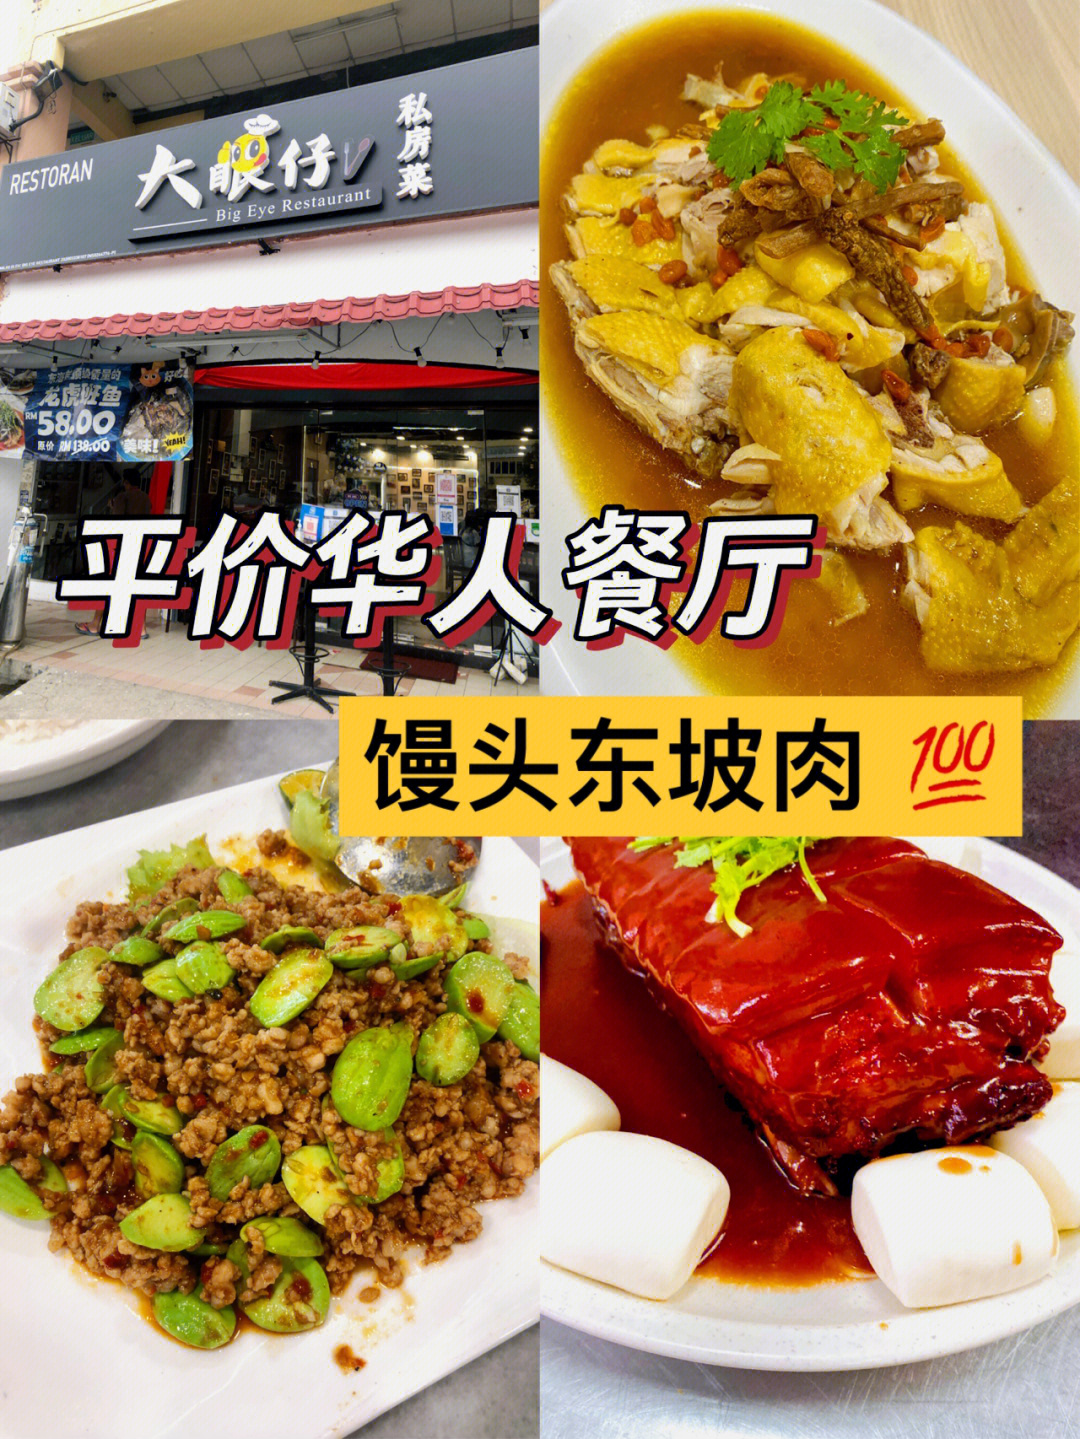 平价华人广东餐东坡肉大眼仔私房菜